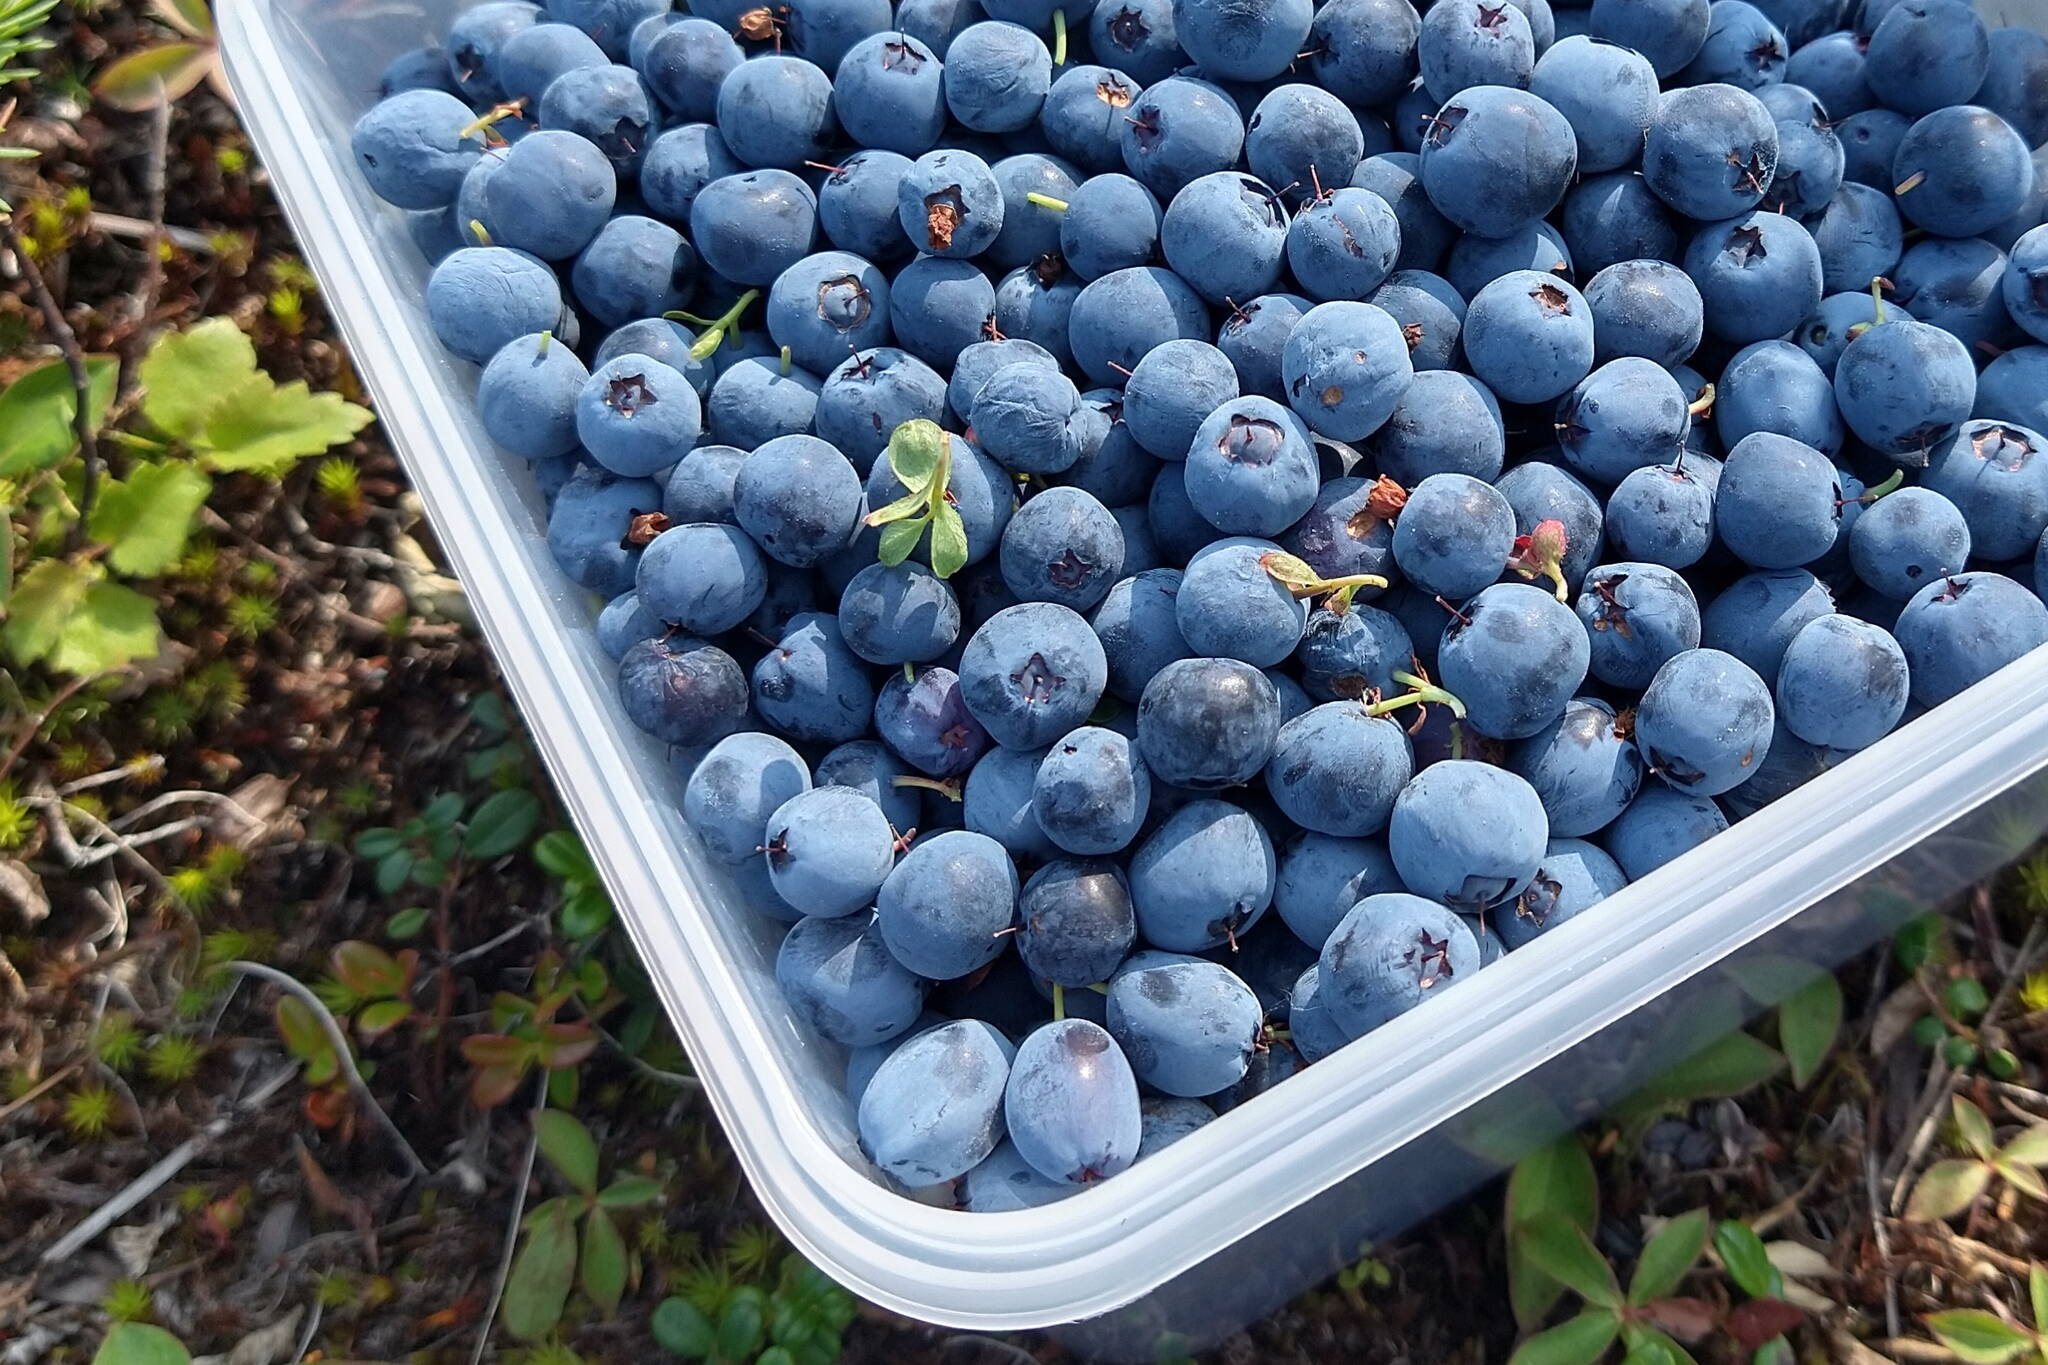 Bog blueberries Zuzana Vaneková picked when she visited Alaska recently fill a plastic container. (Photo by Zuzana Vaneková)